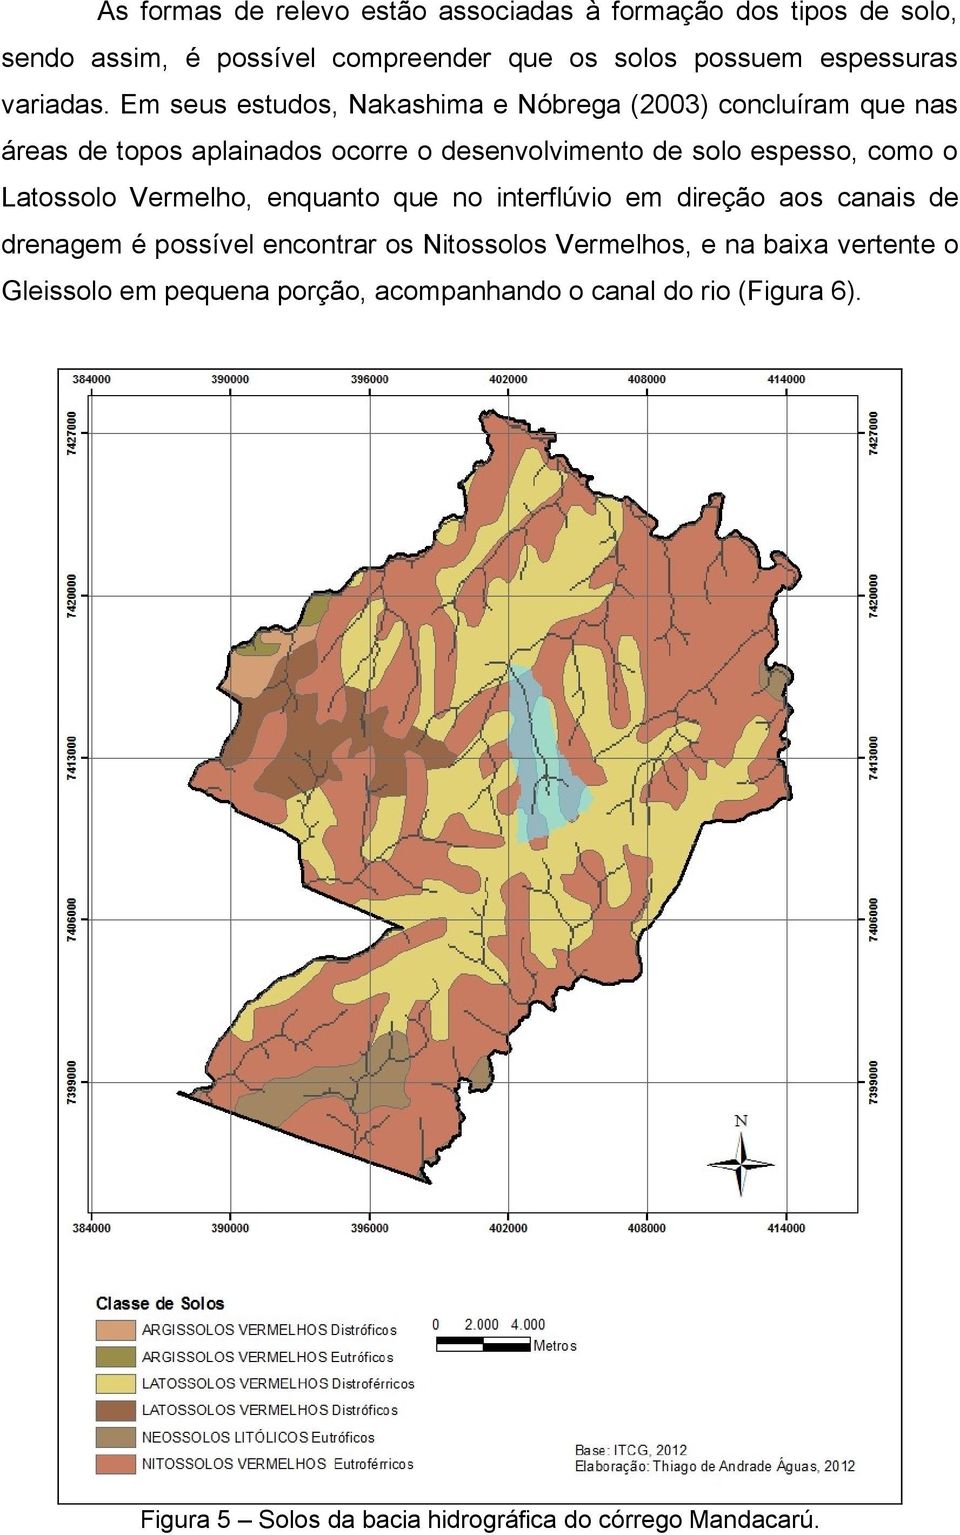 Em seus estudos, Nakashima e Nóbrega (2003) concluíram que nas áreas de topos aplainados ocorre o desenvolvimento de solo espesso, como o